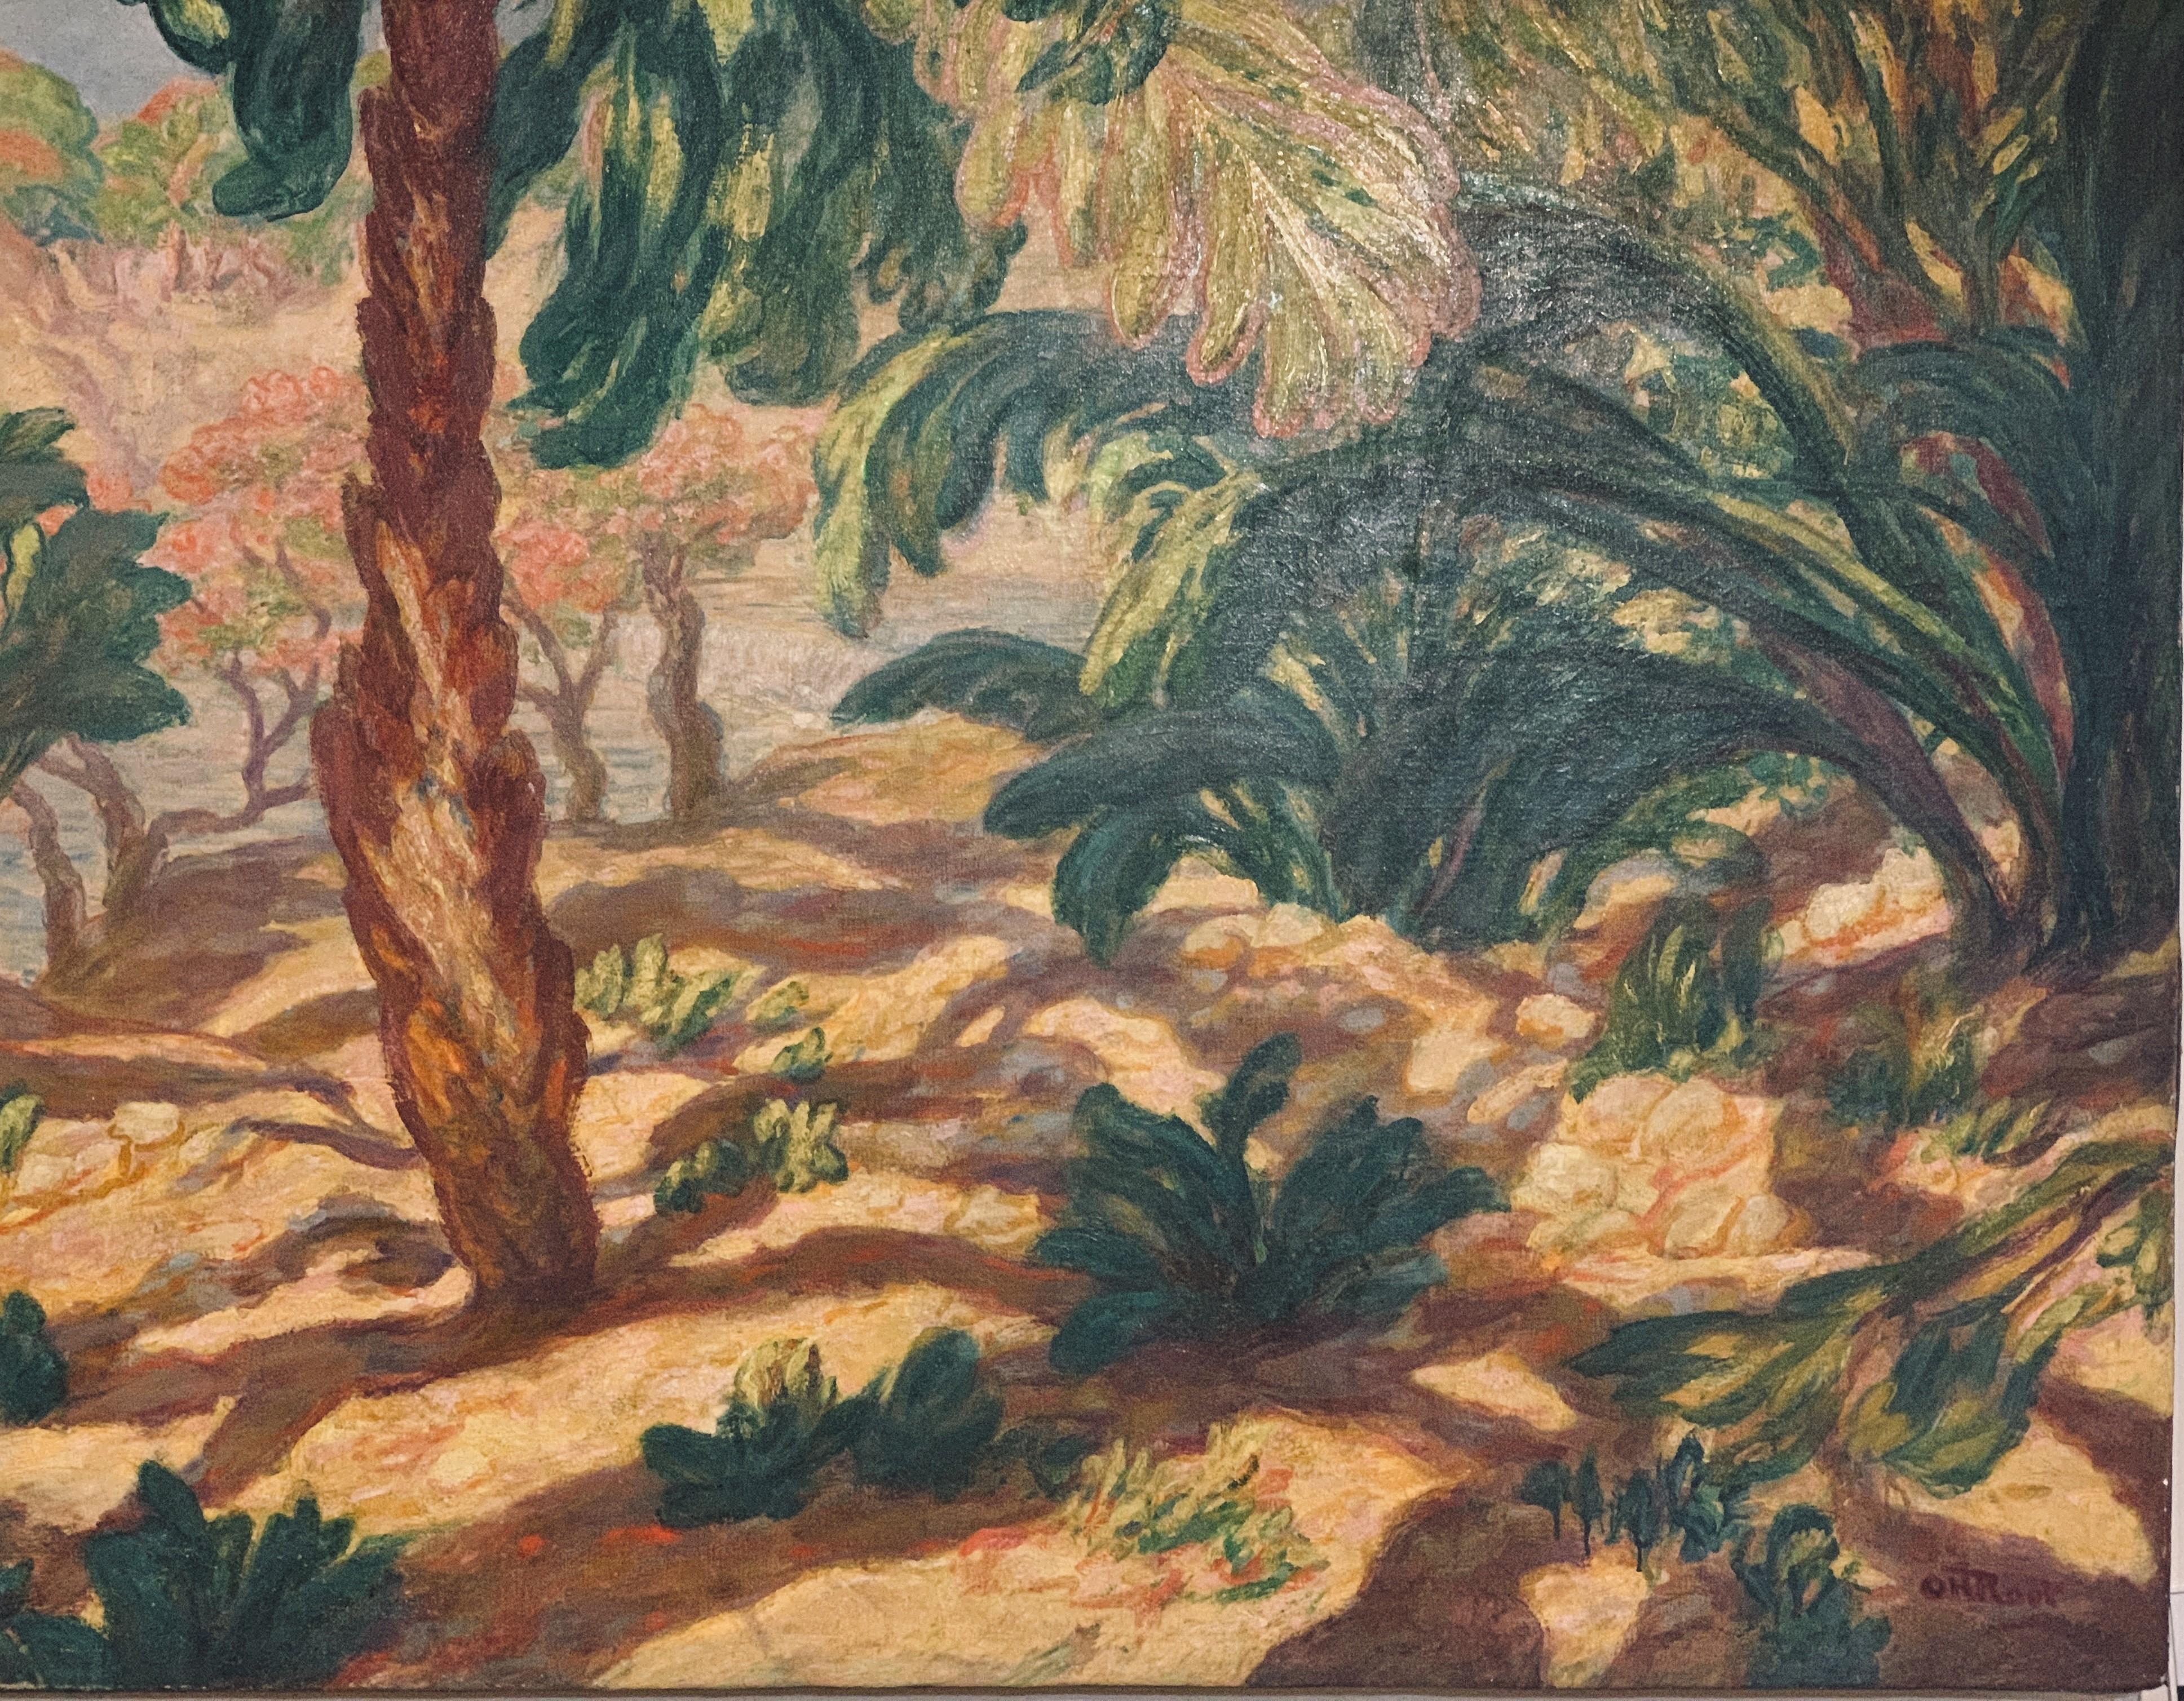 Postimpressionistische Landschaft von Orville Root   Ansicht „Überraschungsnah“ – Painting von Orville H. Root